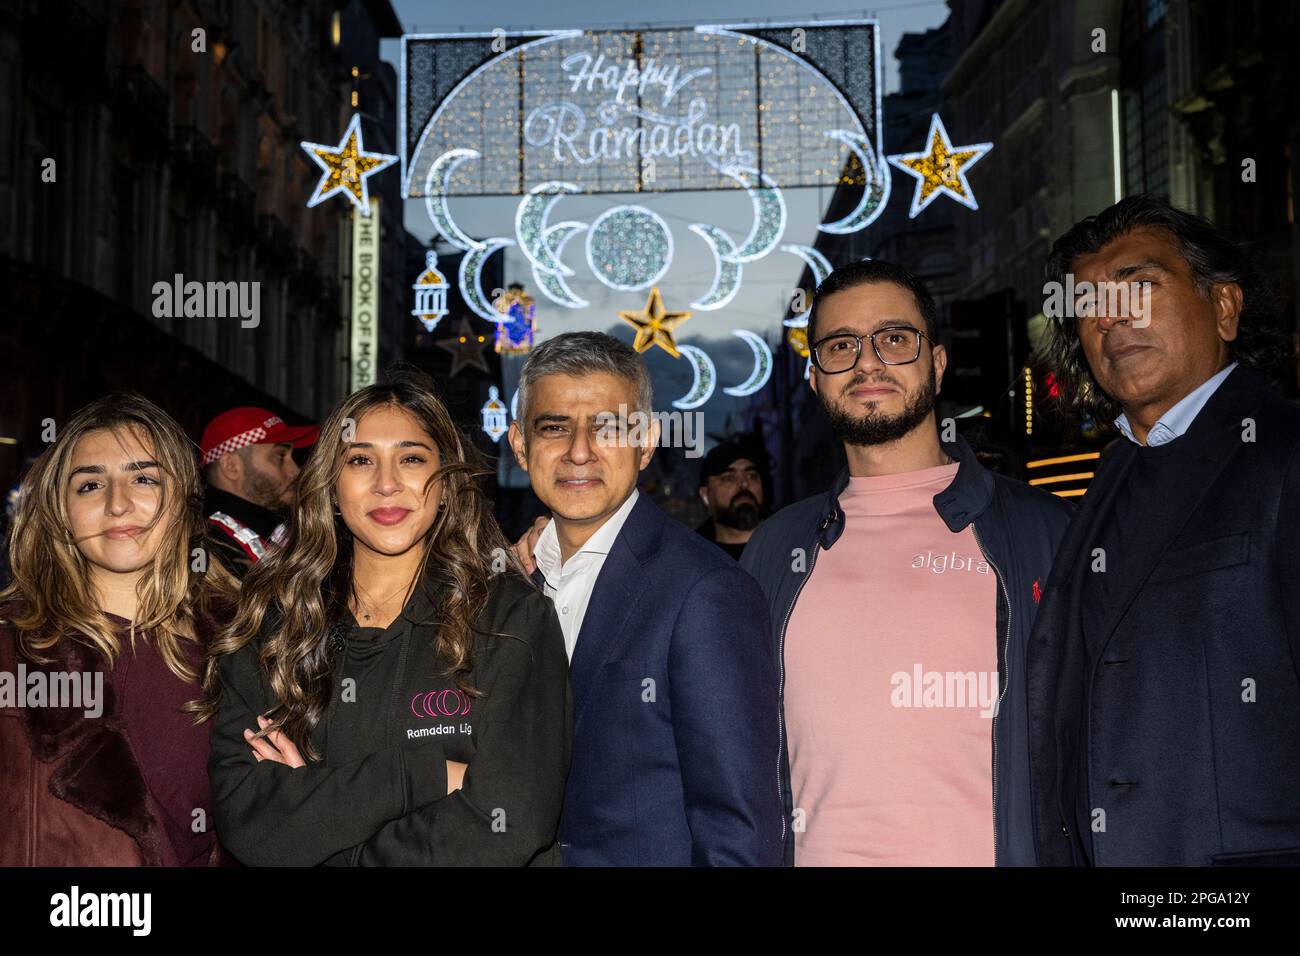 Londres, Royaume-Uni. 21 mars 2023. (L) Ros Morgan, PDG de Heart of London Business Alliance, (2L) Aisha Desai, fondateur de Ramadan Lights, et (C) Sadiq Khan, maire de Londres, à l'entrée en fonction de la première installation de lumières du Ramadan à Piccadilly Circus à la veille du premier jour du Ramadan 2023. Les lumières de cette échelle sont une première au Royaume-Uni et en Europe, avec 30 000 lumières durables illuminées dans le centre de Londres pendant tout le mois du Ramadan. Credit: Stephen Chung / Alamy Live News Banque D'Images